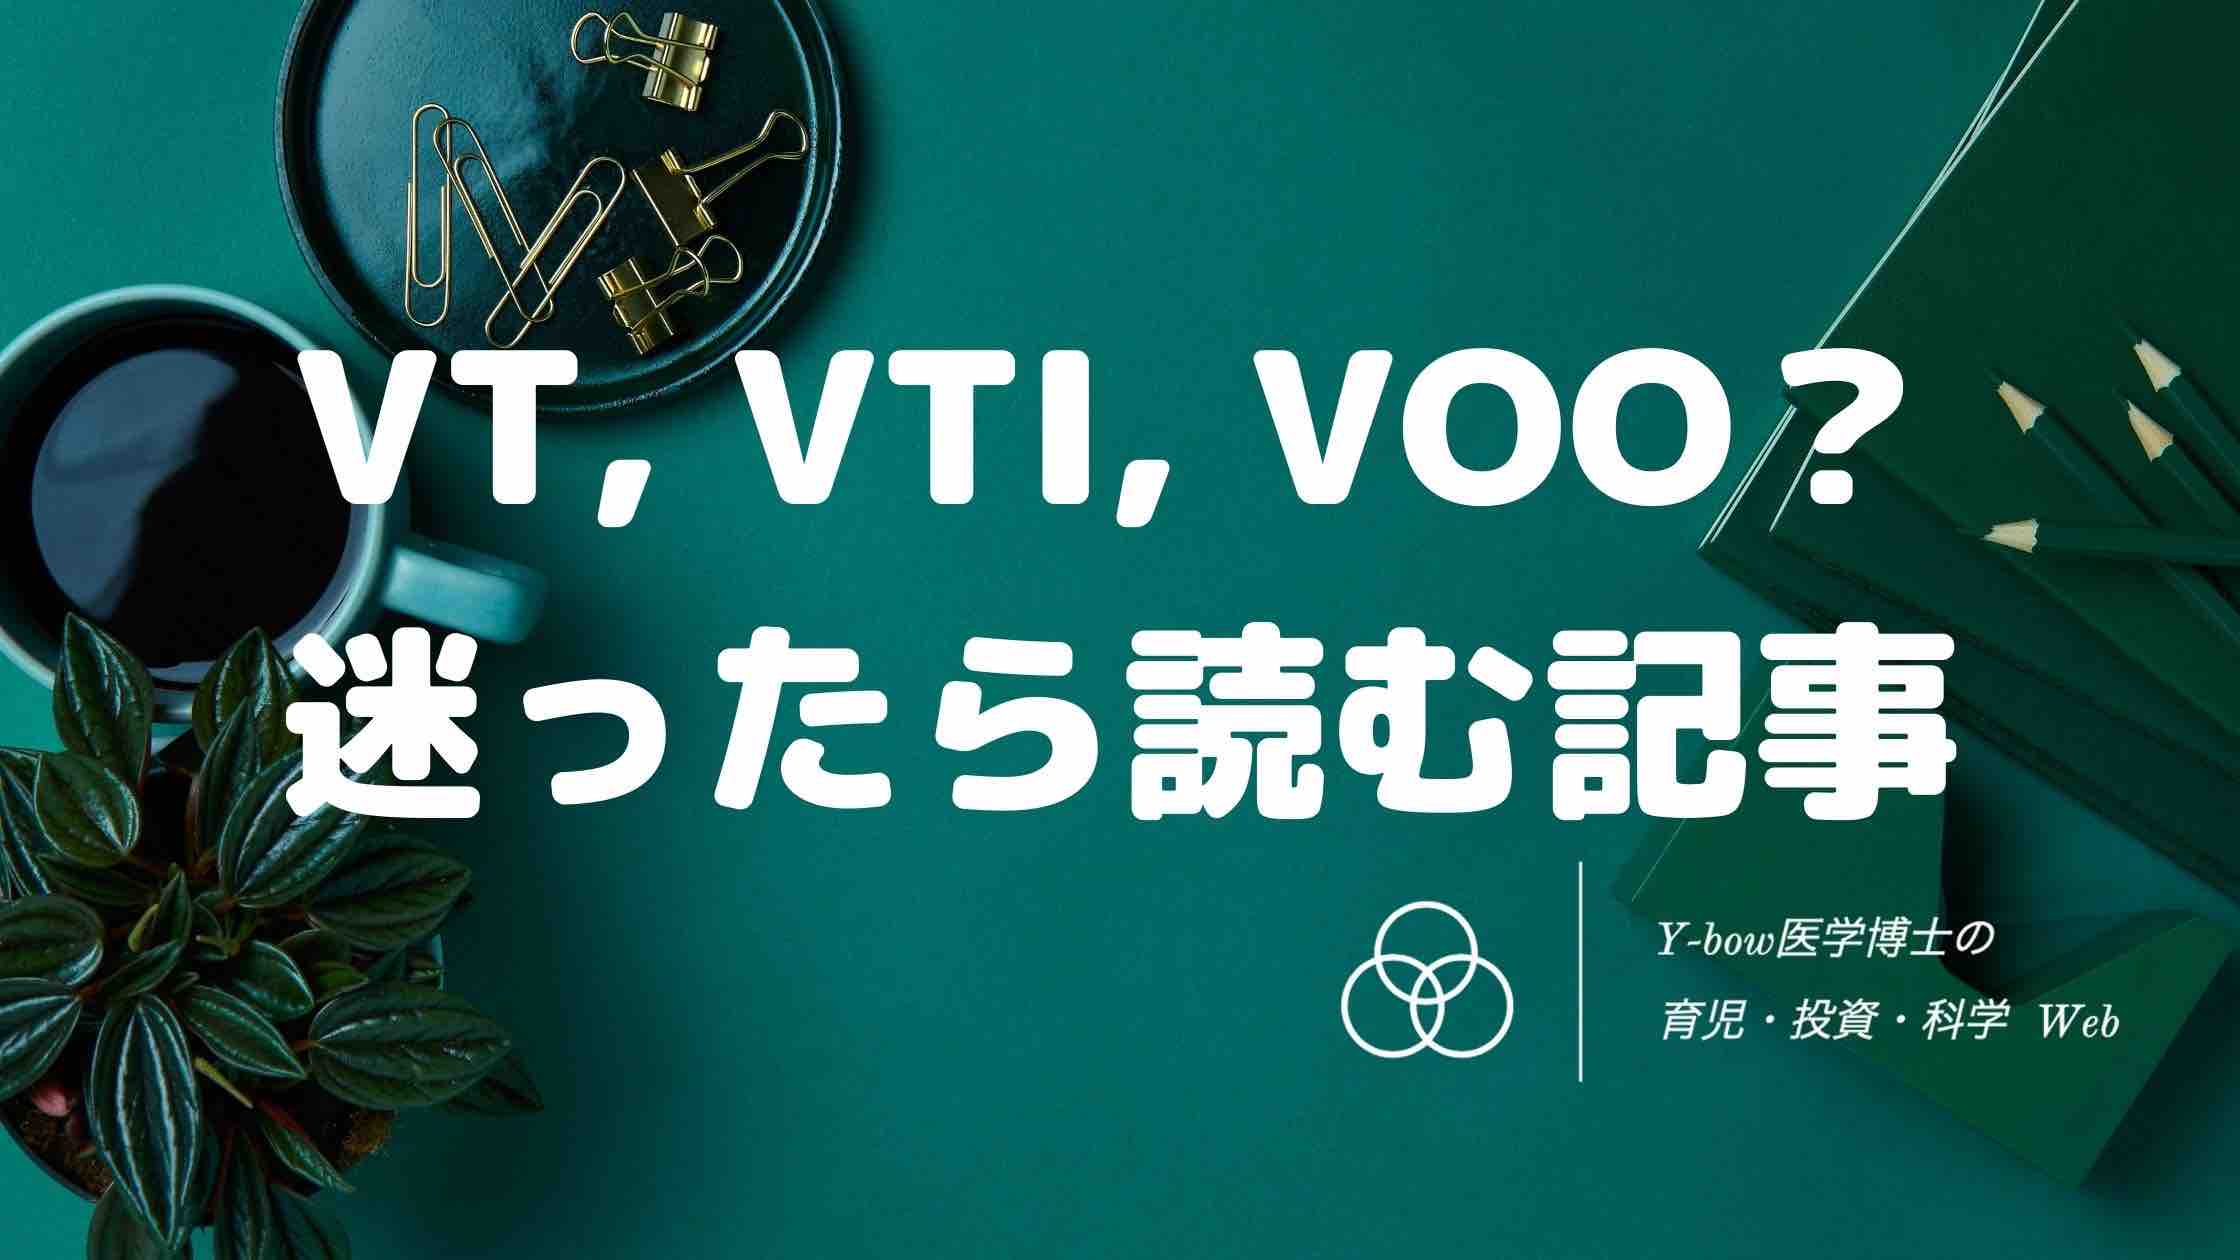 VT-VTI-VOO-comparison